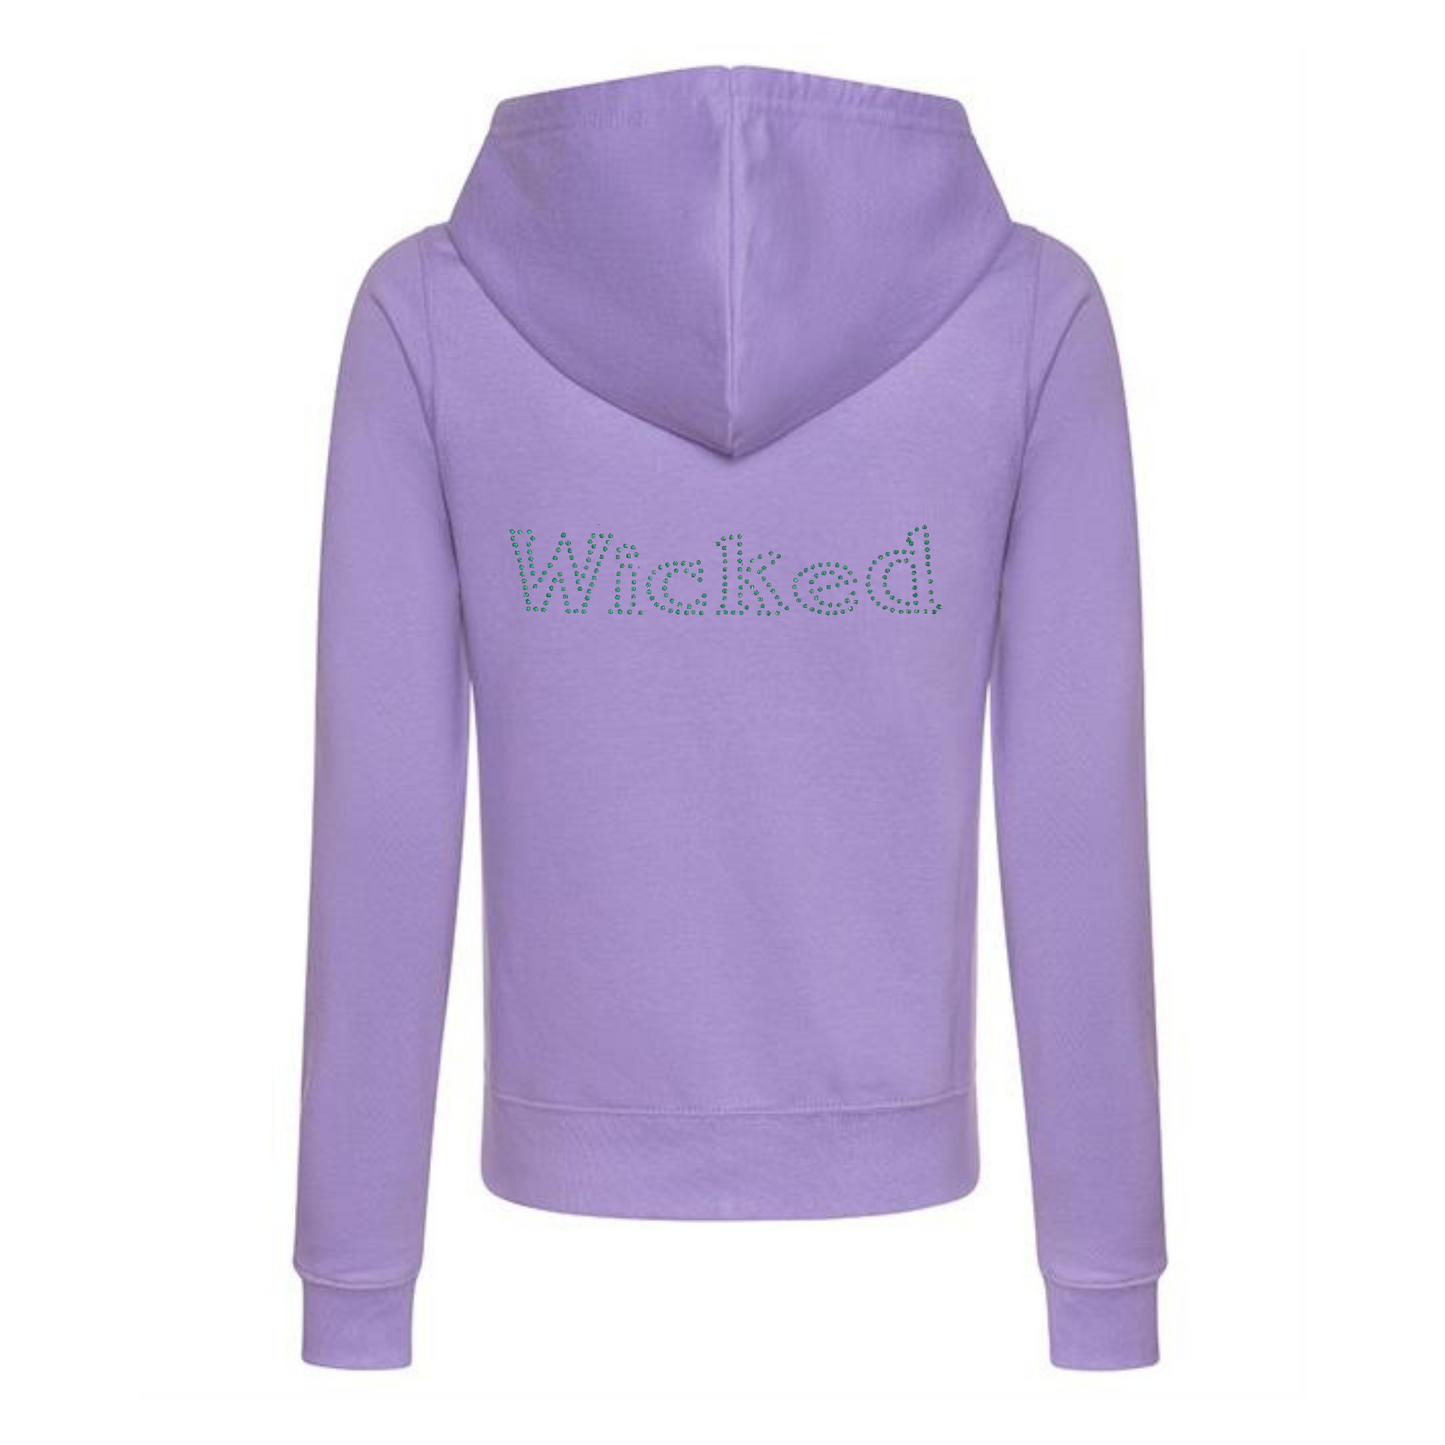 purple zip hoodie with green bling wicked rhinestones wording on the back